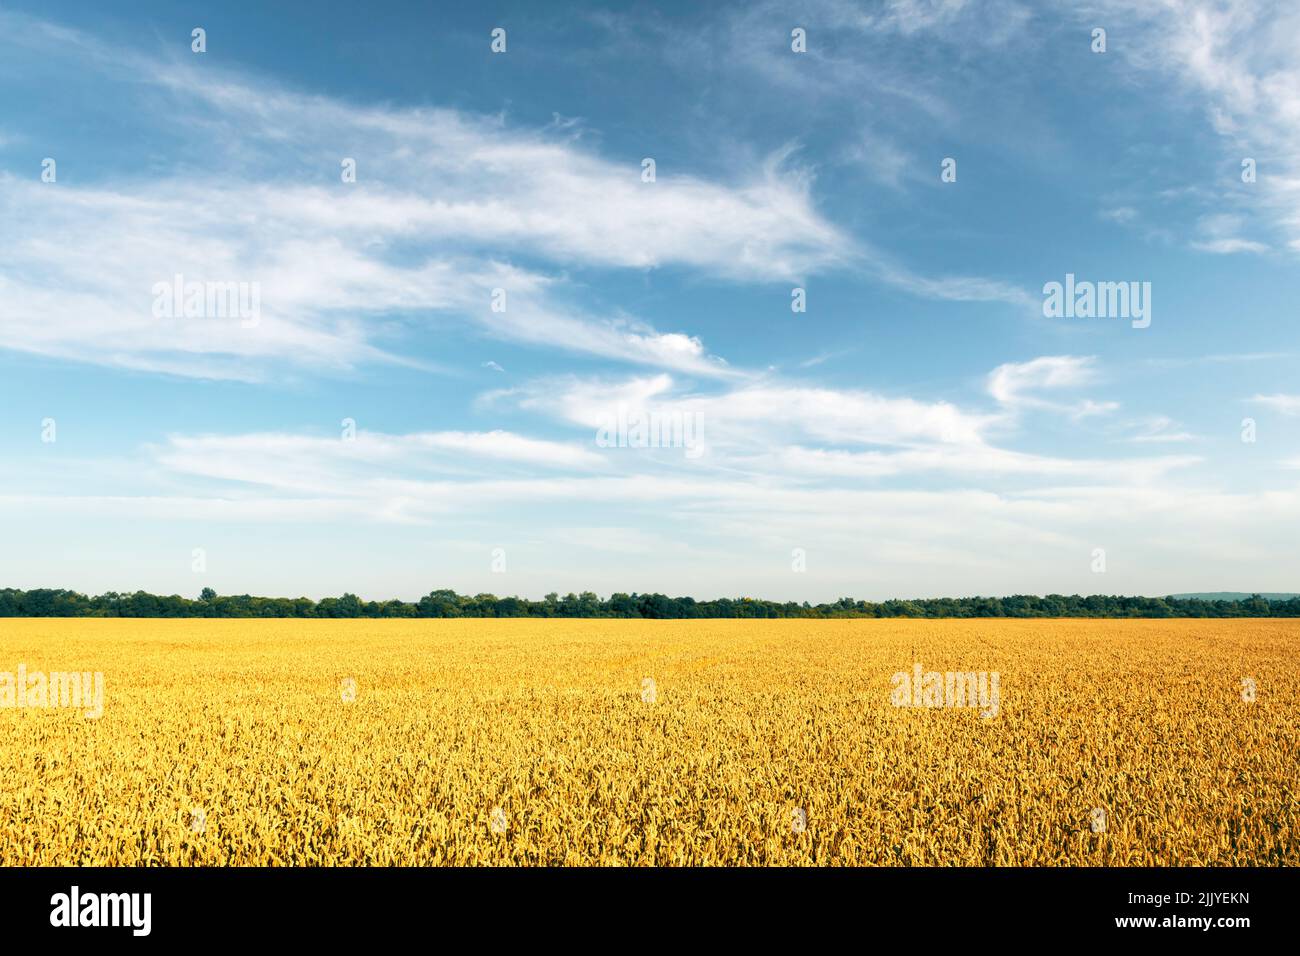 Des épillets de blé mûrs sur un terrain doré, dans un ciel bleu avec des nuages moelleux. Paysage industriel et nature. Ukraine, Europe Banque D'Images